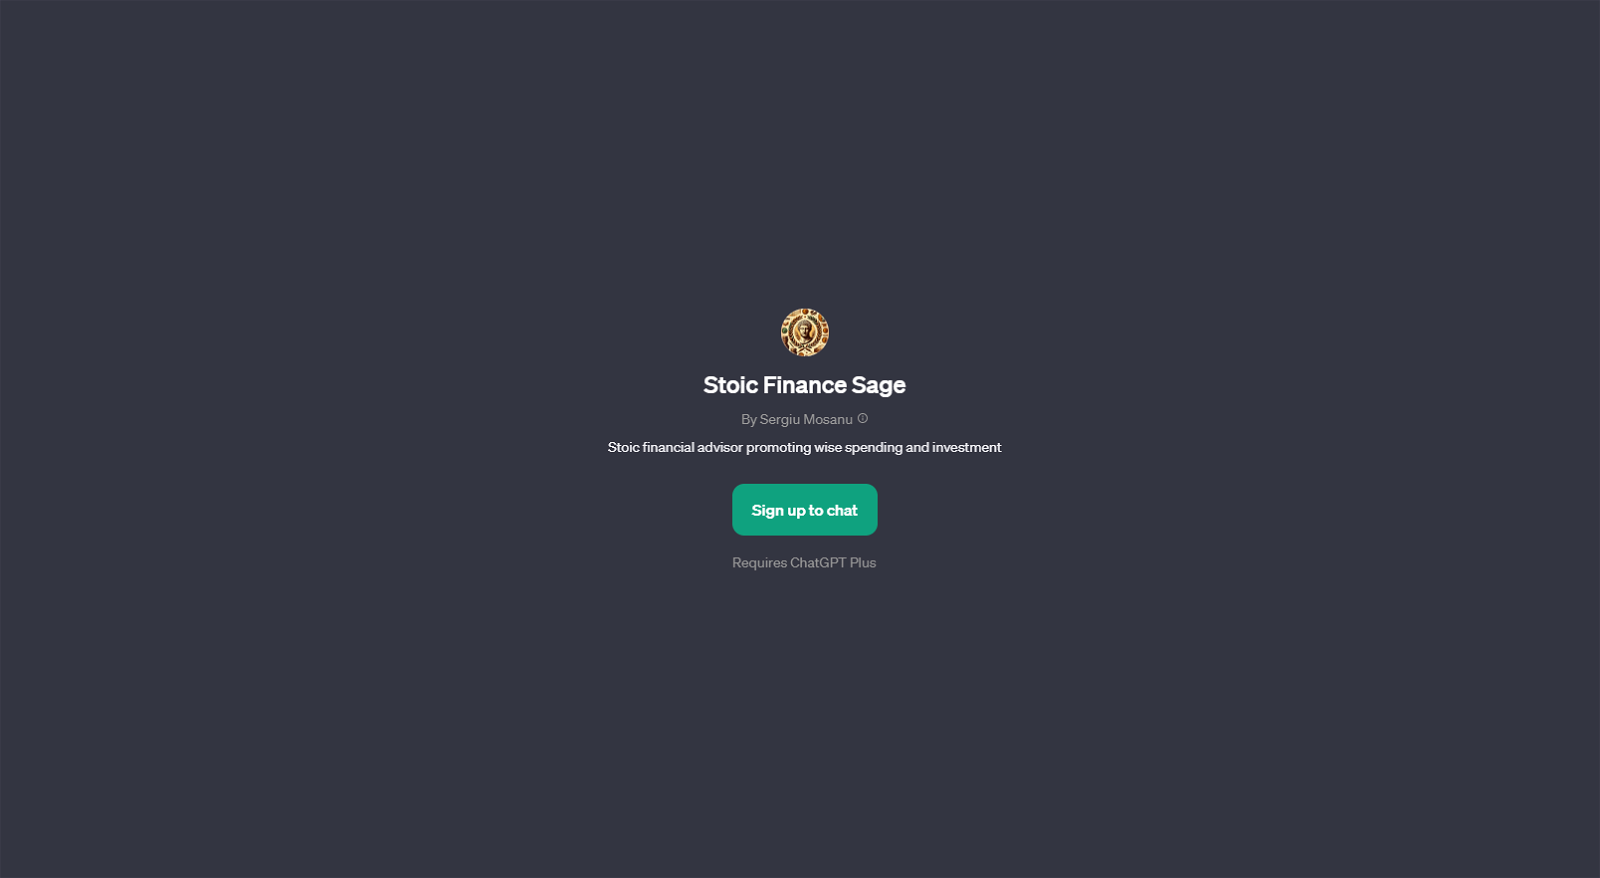 Stoic Finance Sage website